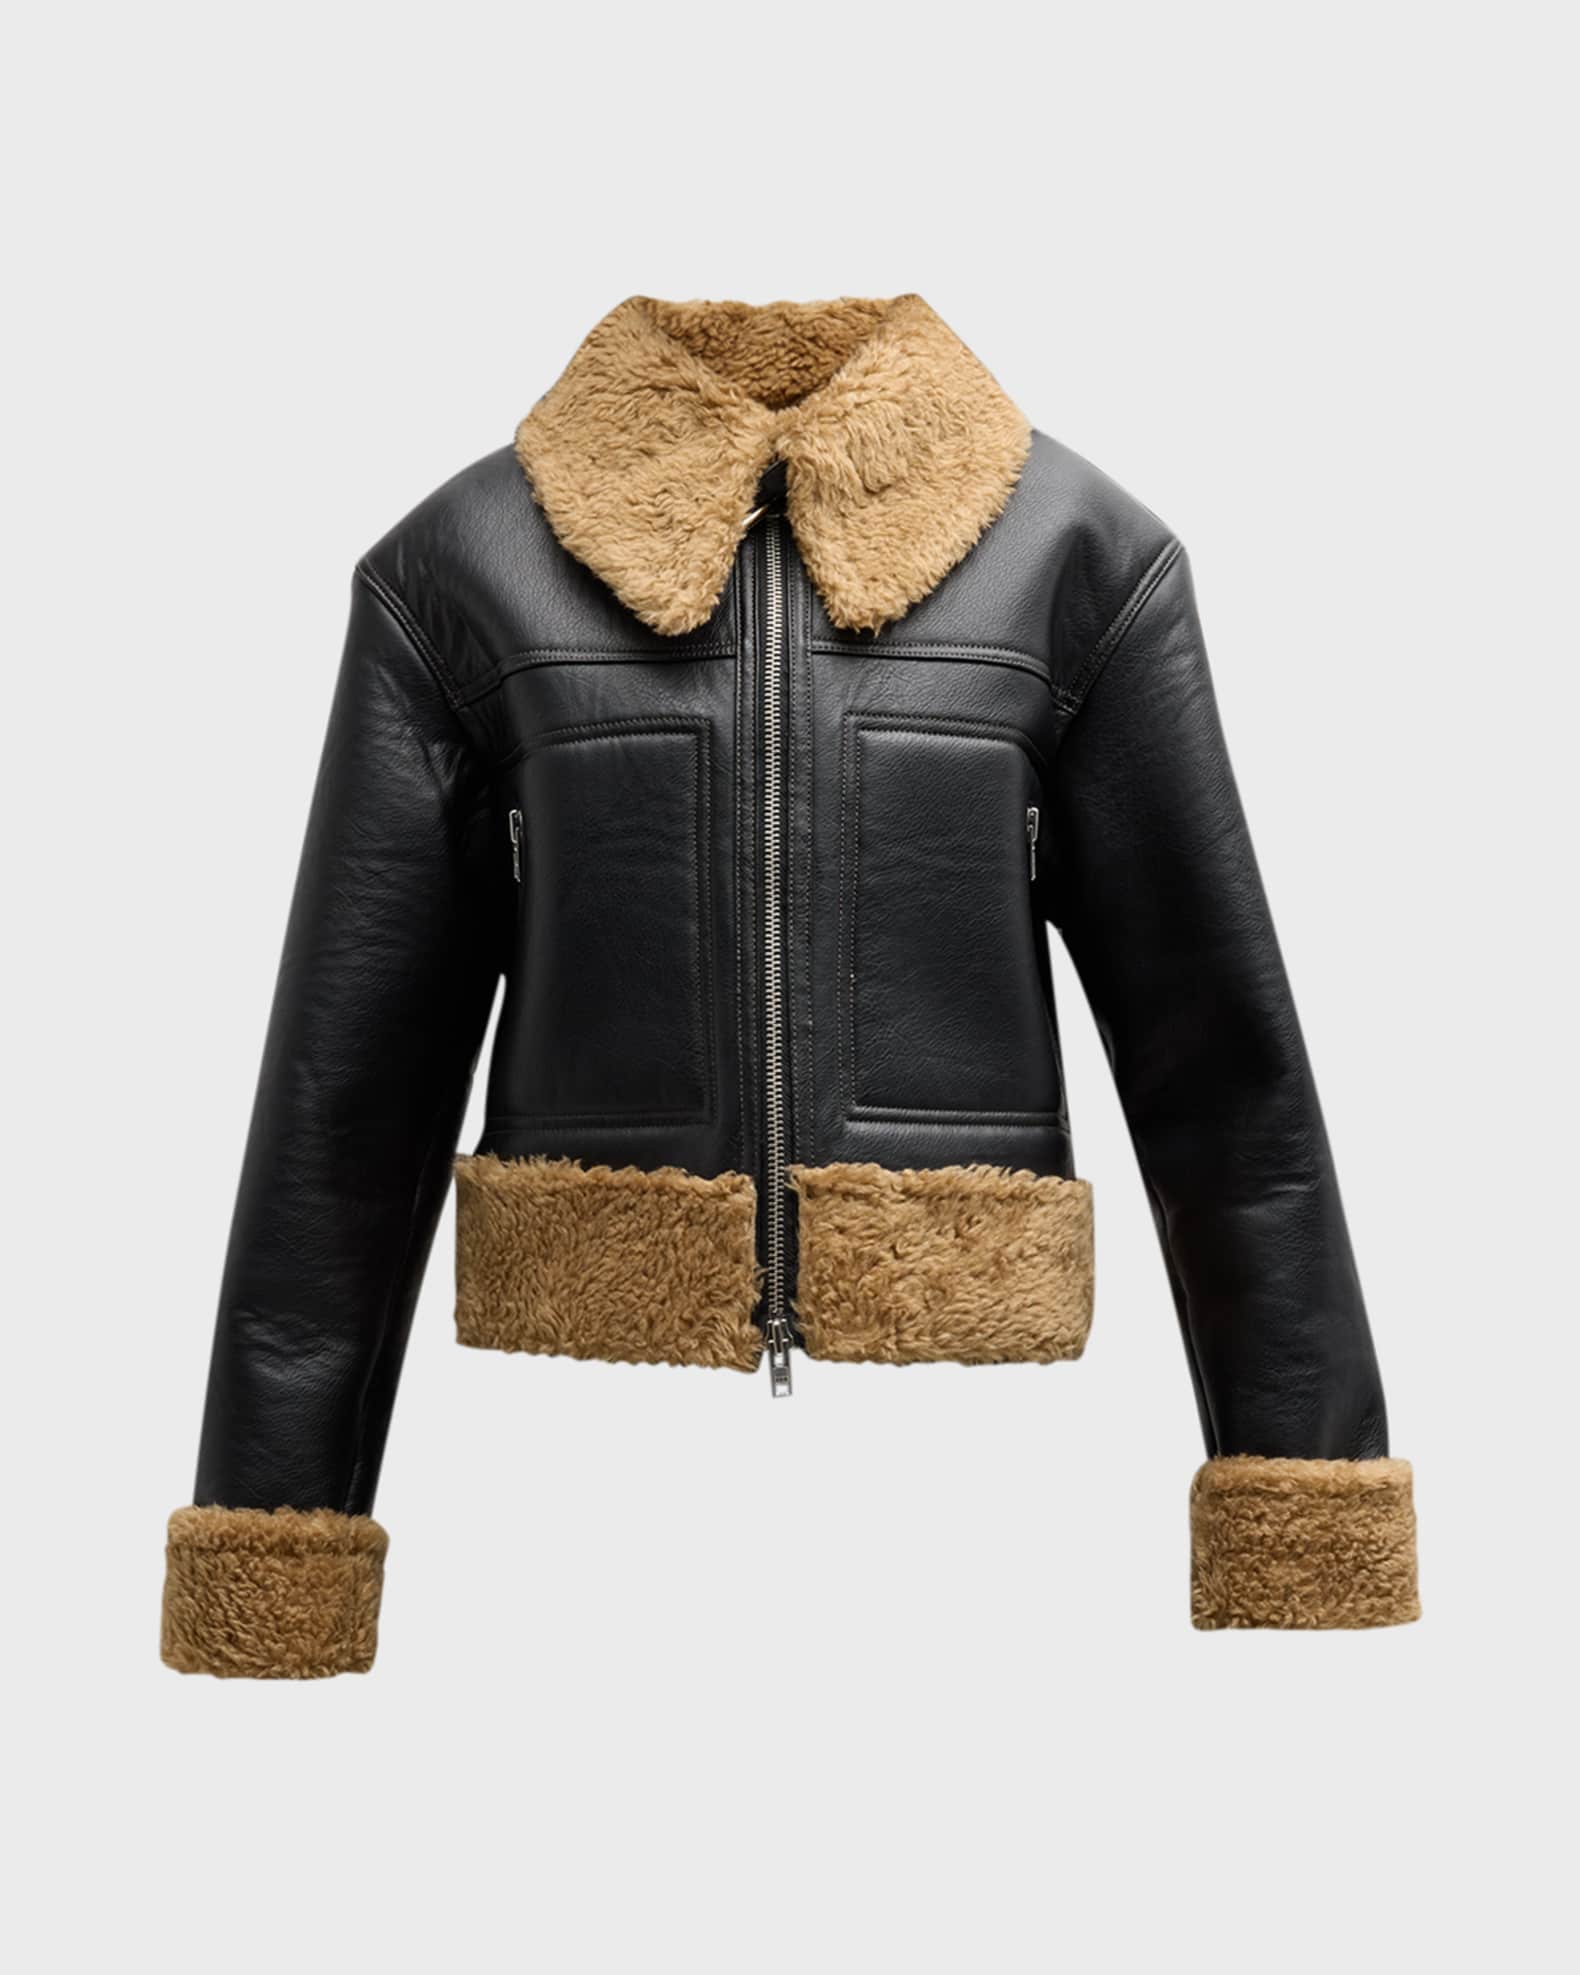 A.L.C. Aspen Faux-Leather Jacket | Neiman Marcus